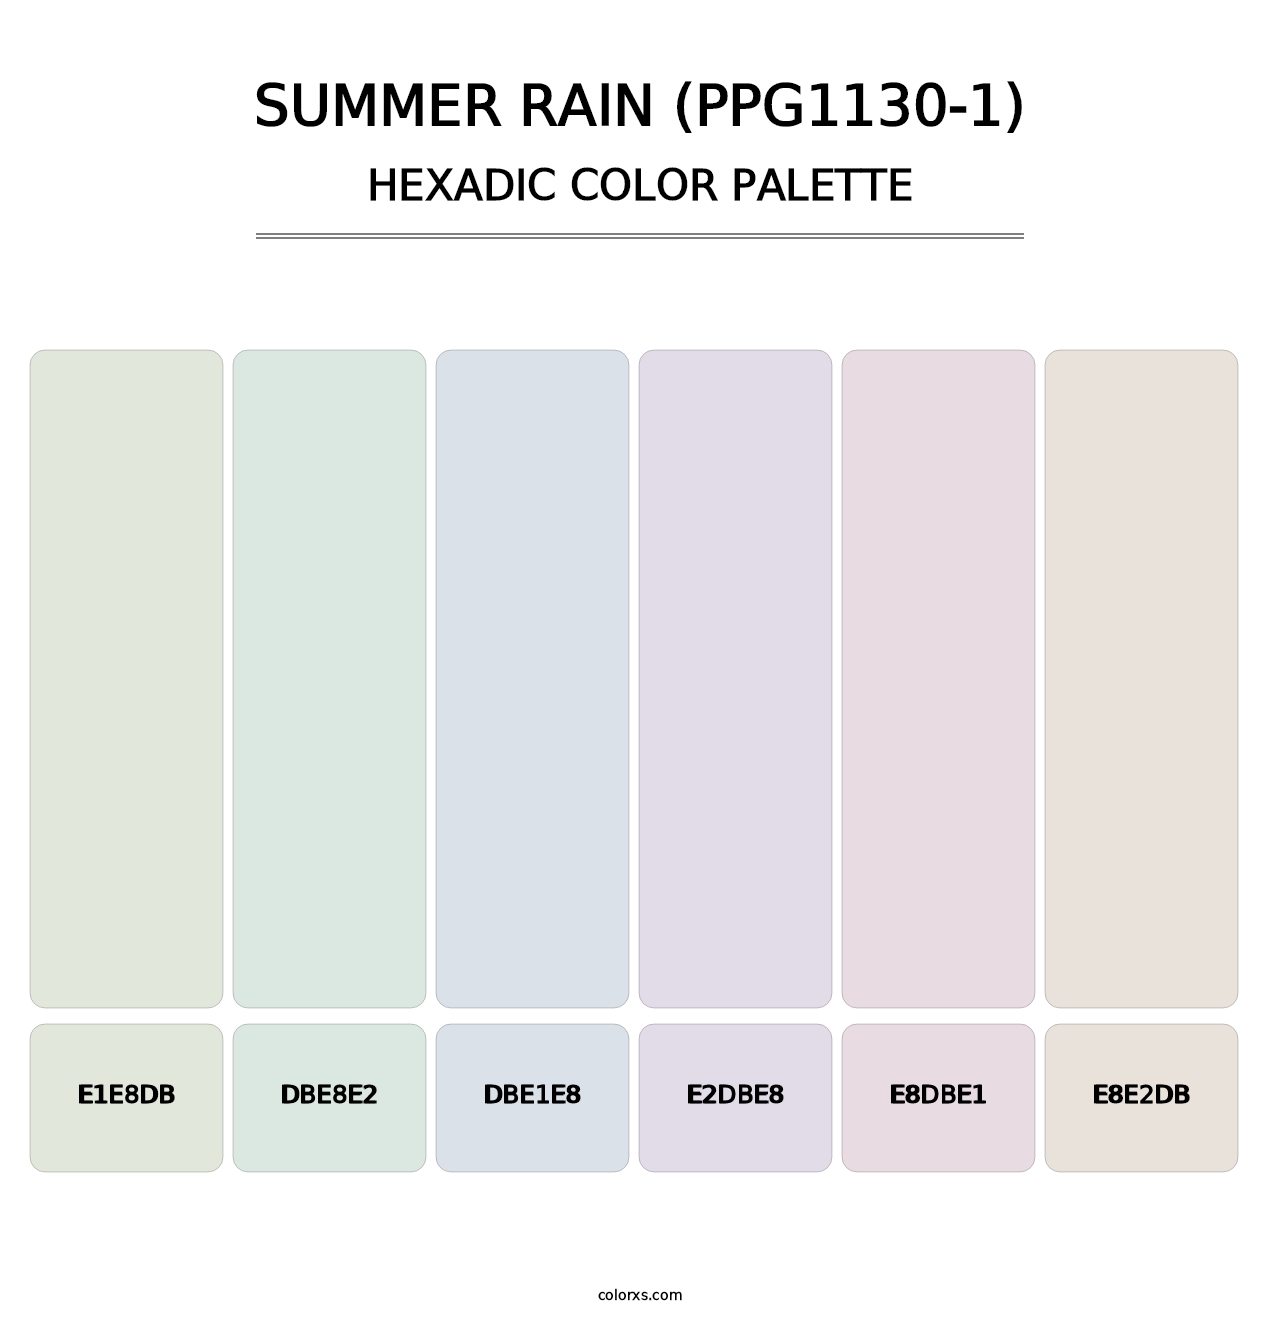 Summer Rain (PPG1130-1) - Hexadic Color Palette